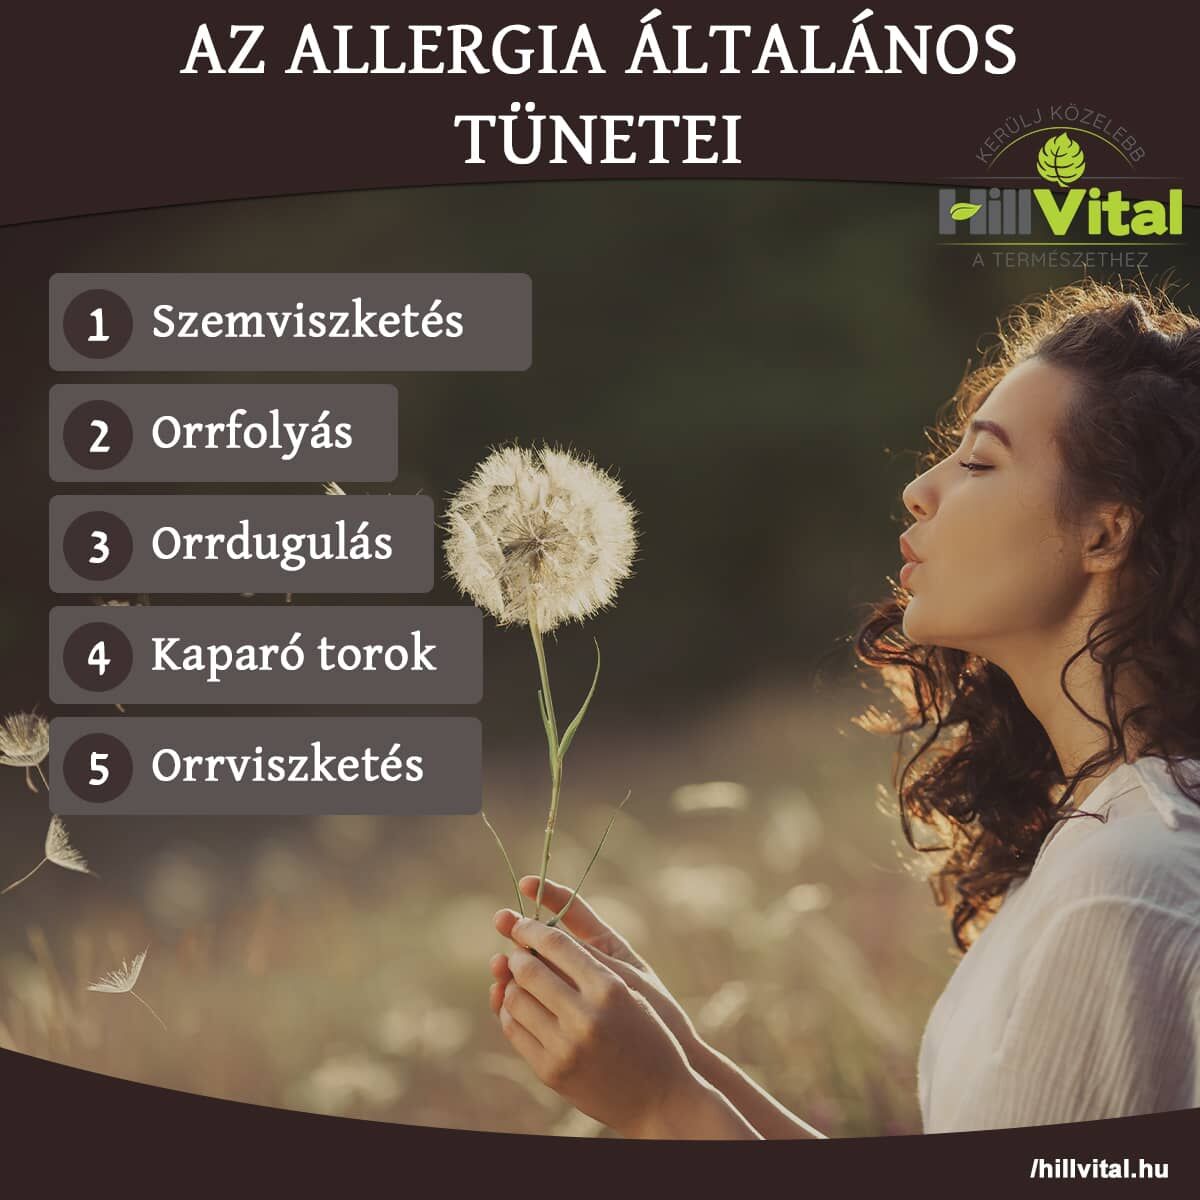 Az allergia általános tünetei